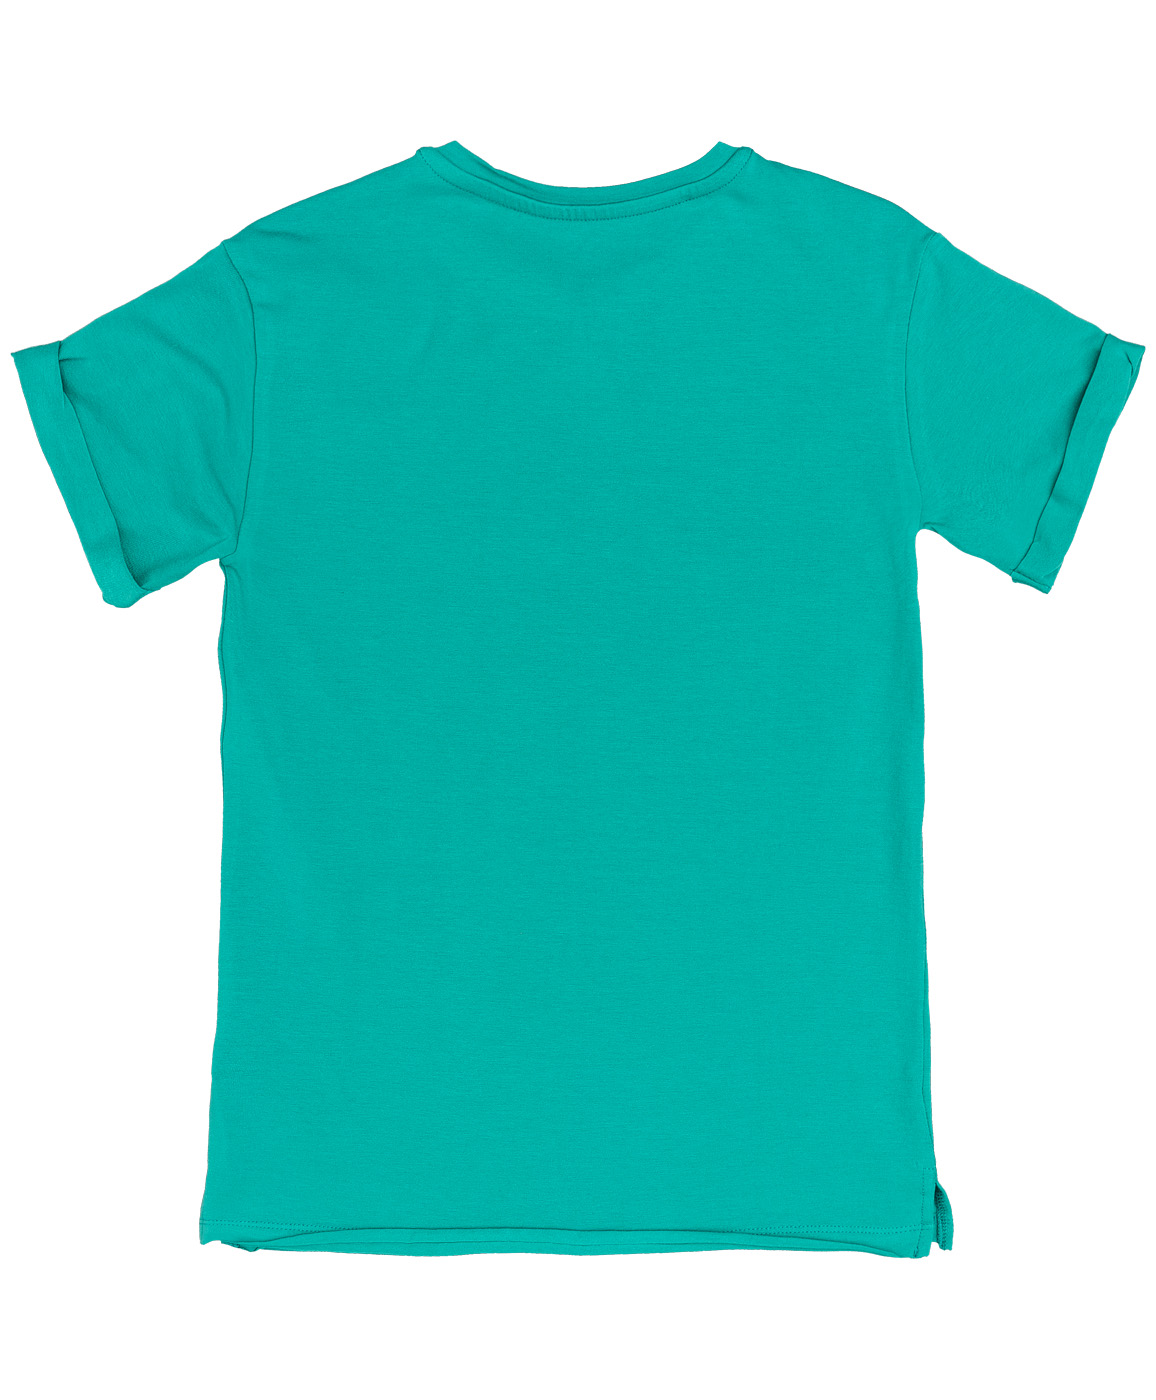 Бирюзовая футболка с принтом Button Blue 219BBGC12071300, размер 110, цвет голубой - фото 2